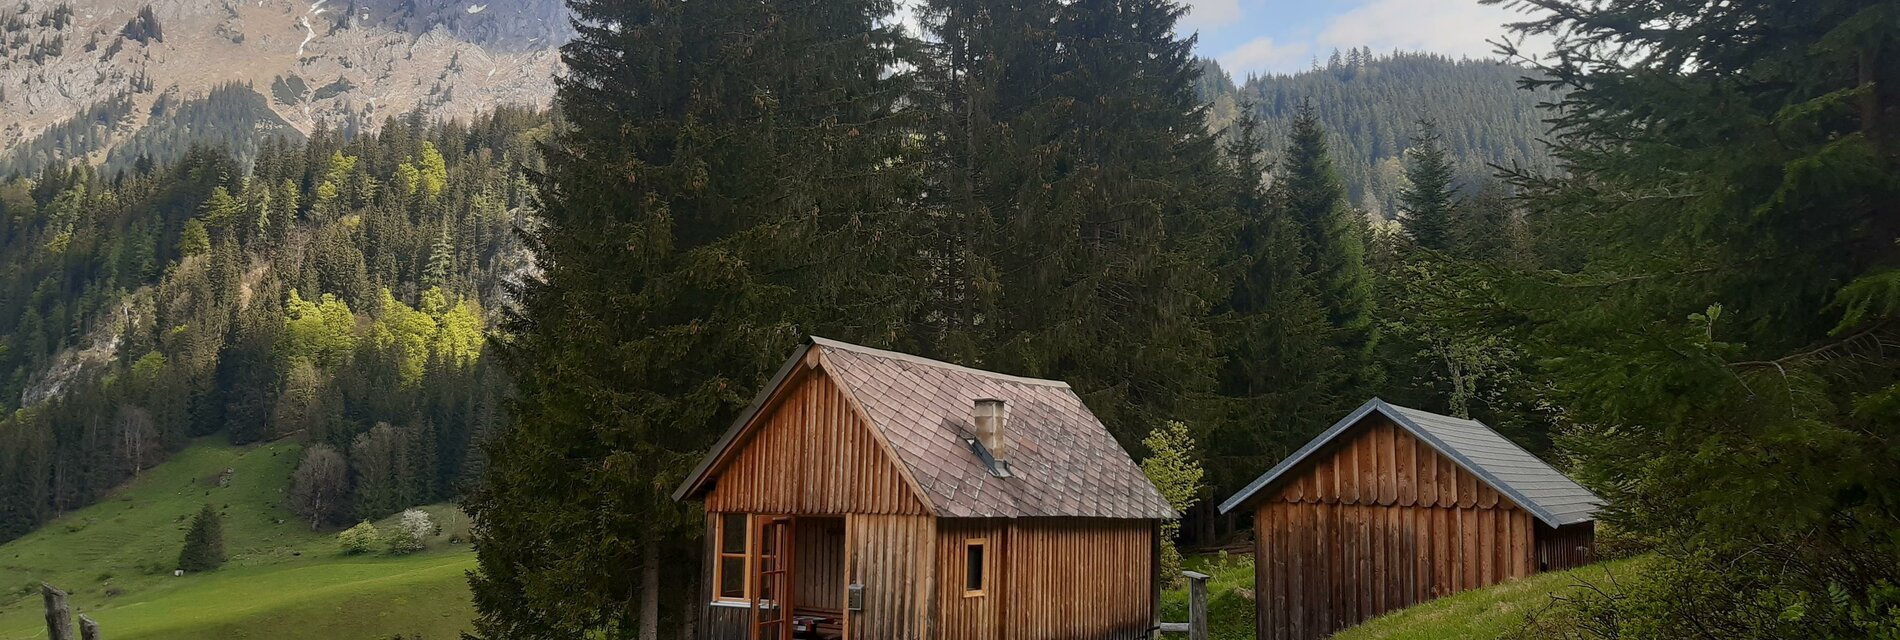 Einfache Almhütte im Bergsteigerdorf Johnsbach